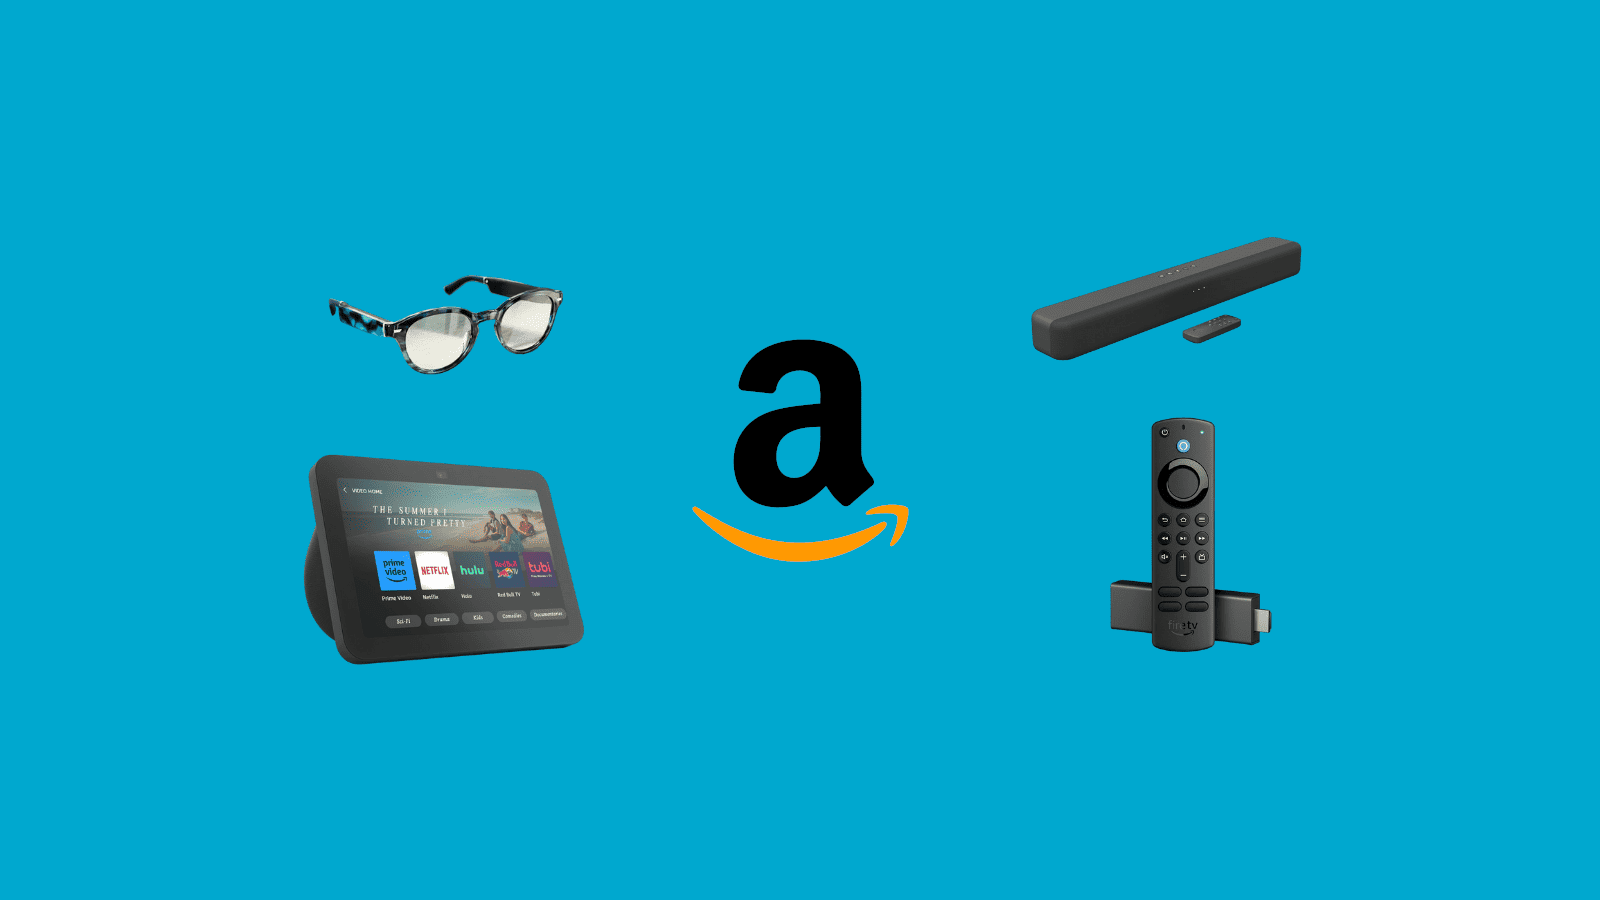 Novidades da Amazon: novo Fire TV Stick, Echo Show 8 e Alexa “turbinada” com inteligência artificial